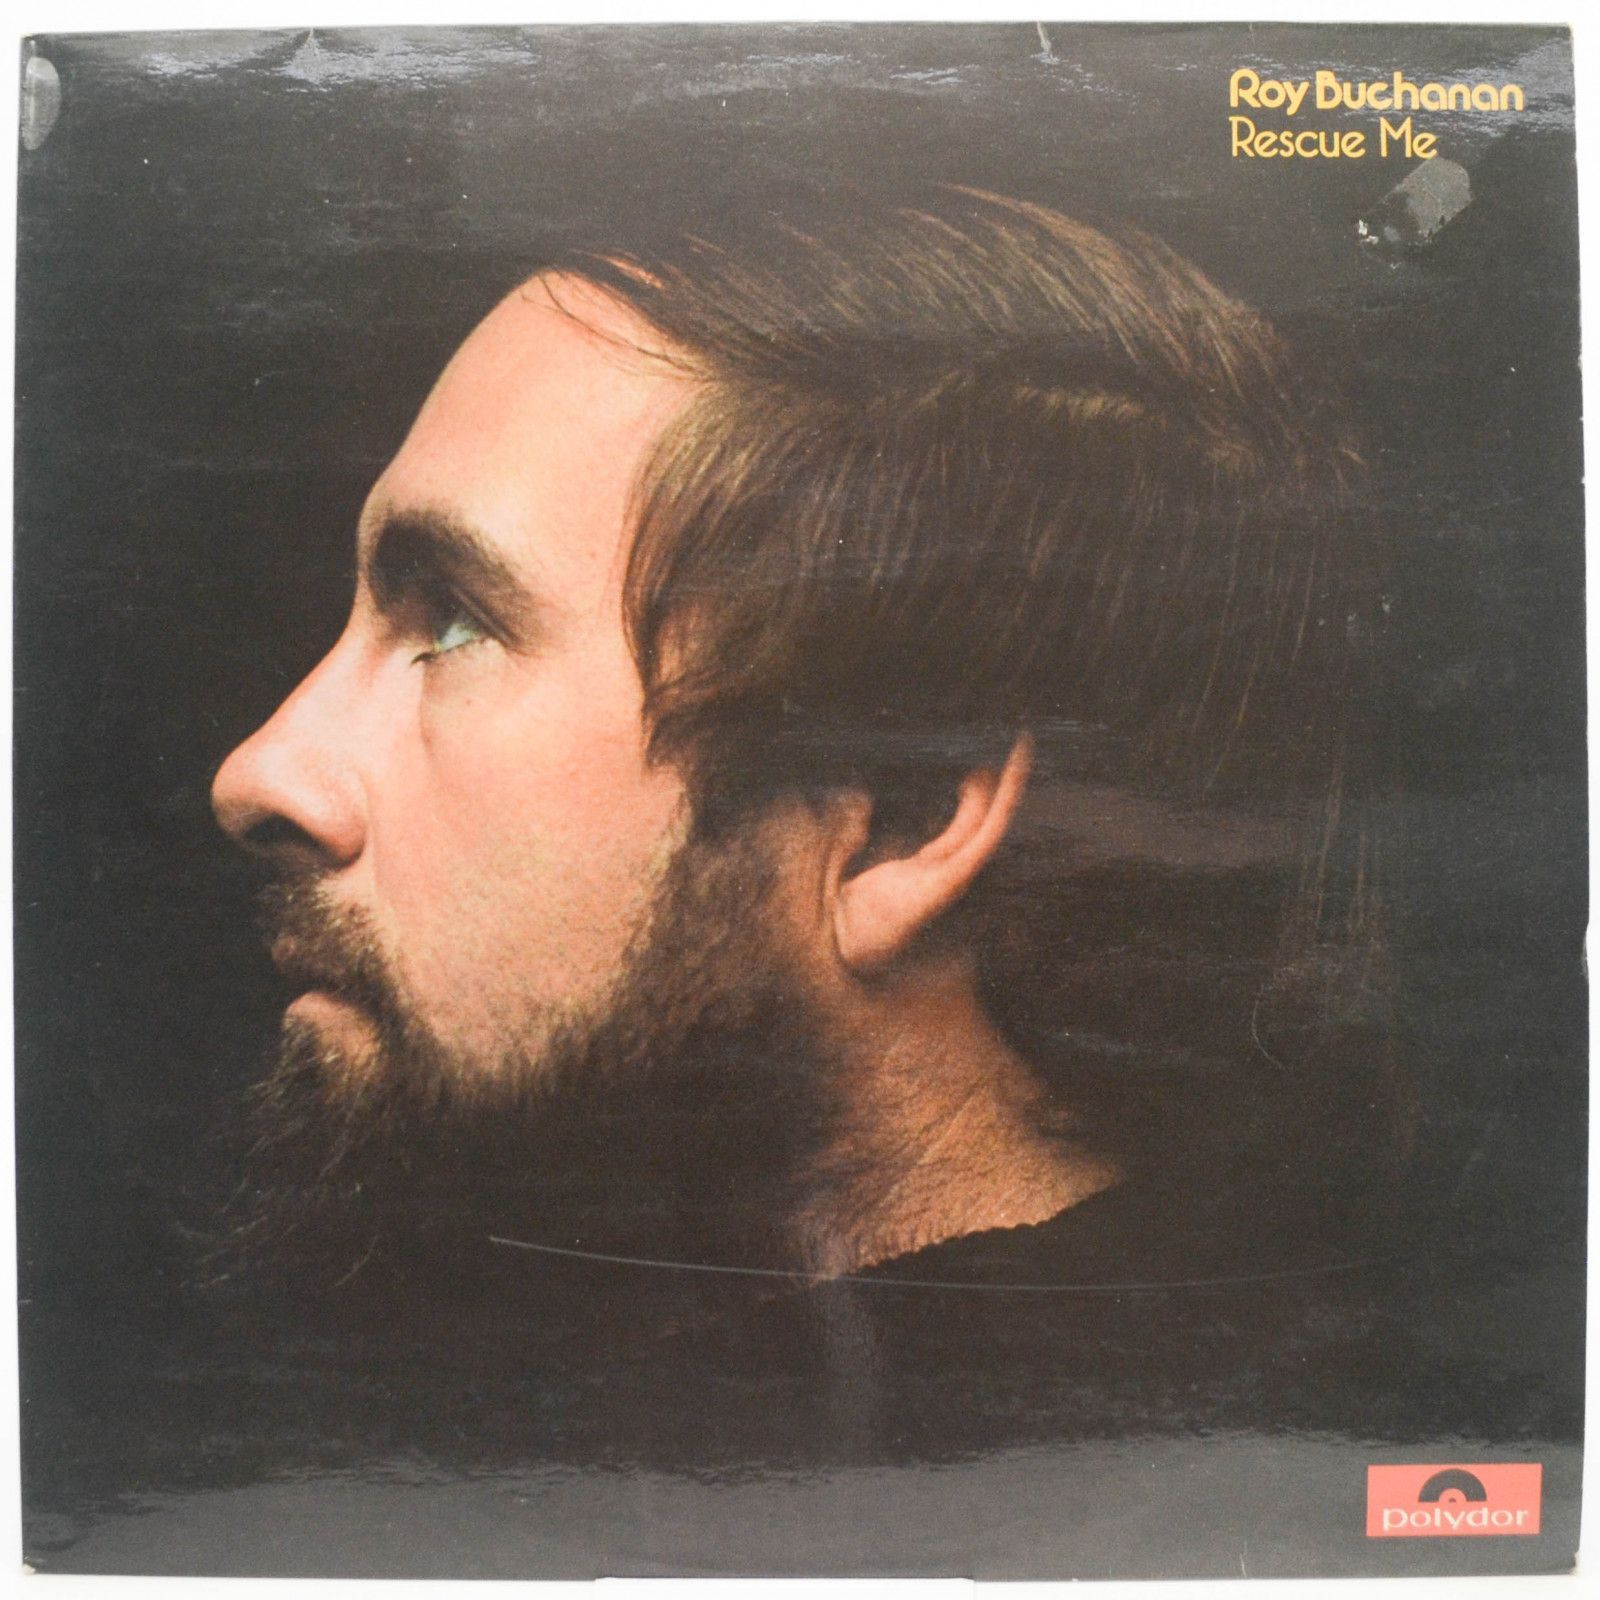 Roy Buchanan — Rescue Me (UK), 1974